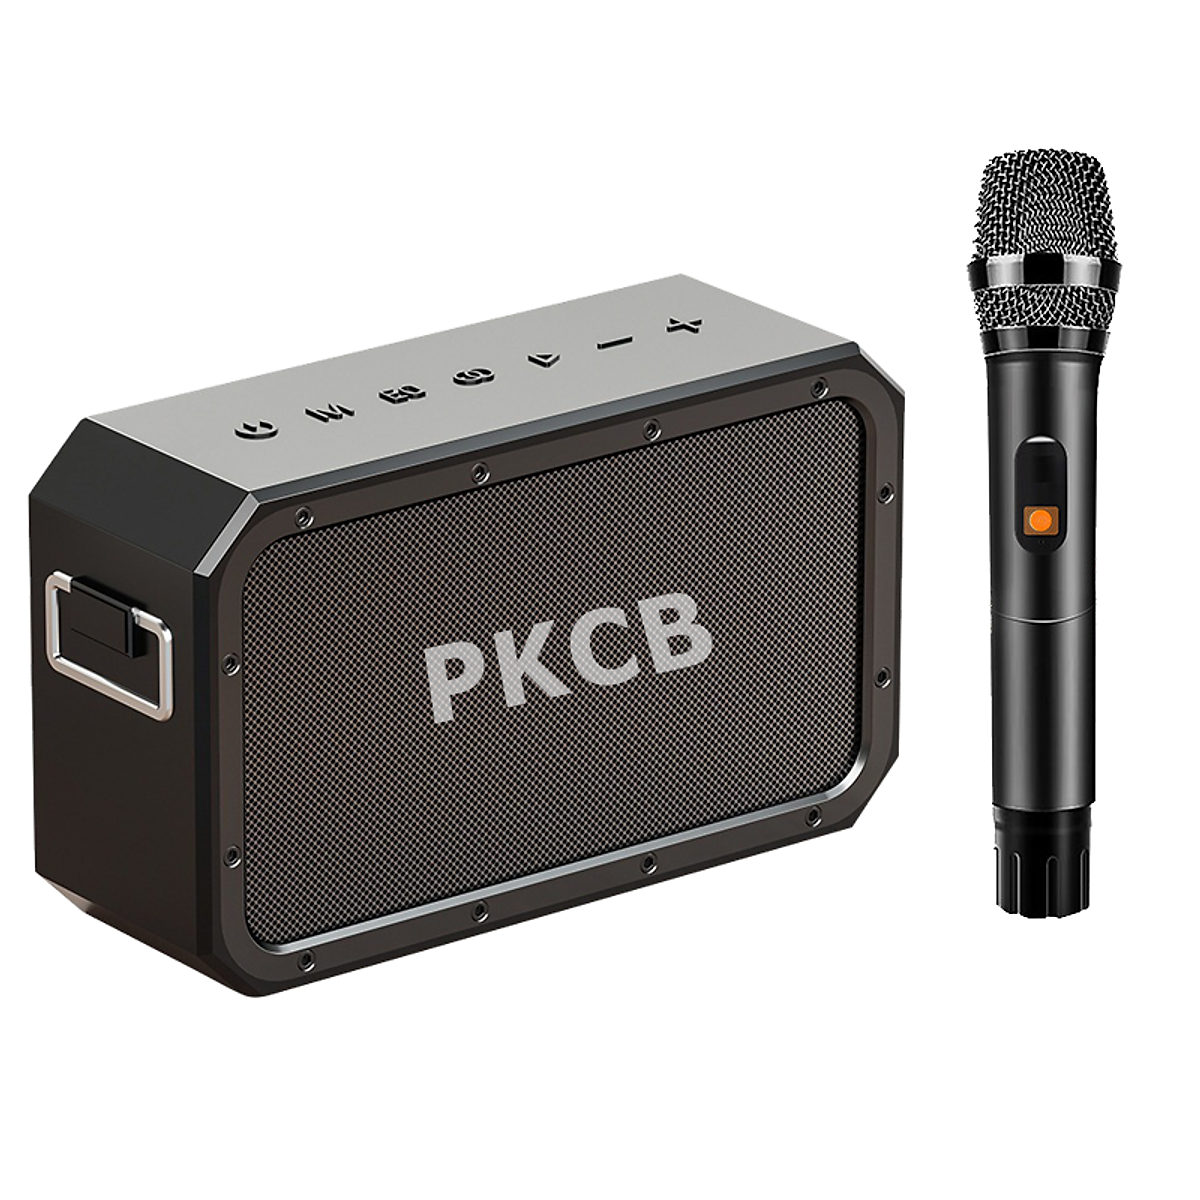 Bộ Loa Bluetooth không dây nghe nhạc micro bluetooth không dây hát Karaoke cao cấp 120W công suất lớn Super Bass có cổng usb thẻ nhớ line 3.5mm pin 15600MAH sạc Type C Chip DSP loa kết nối TWS lên 240W Hàng Chính Hãng PKCB